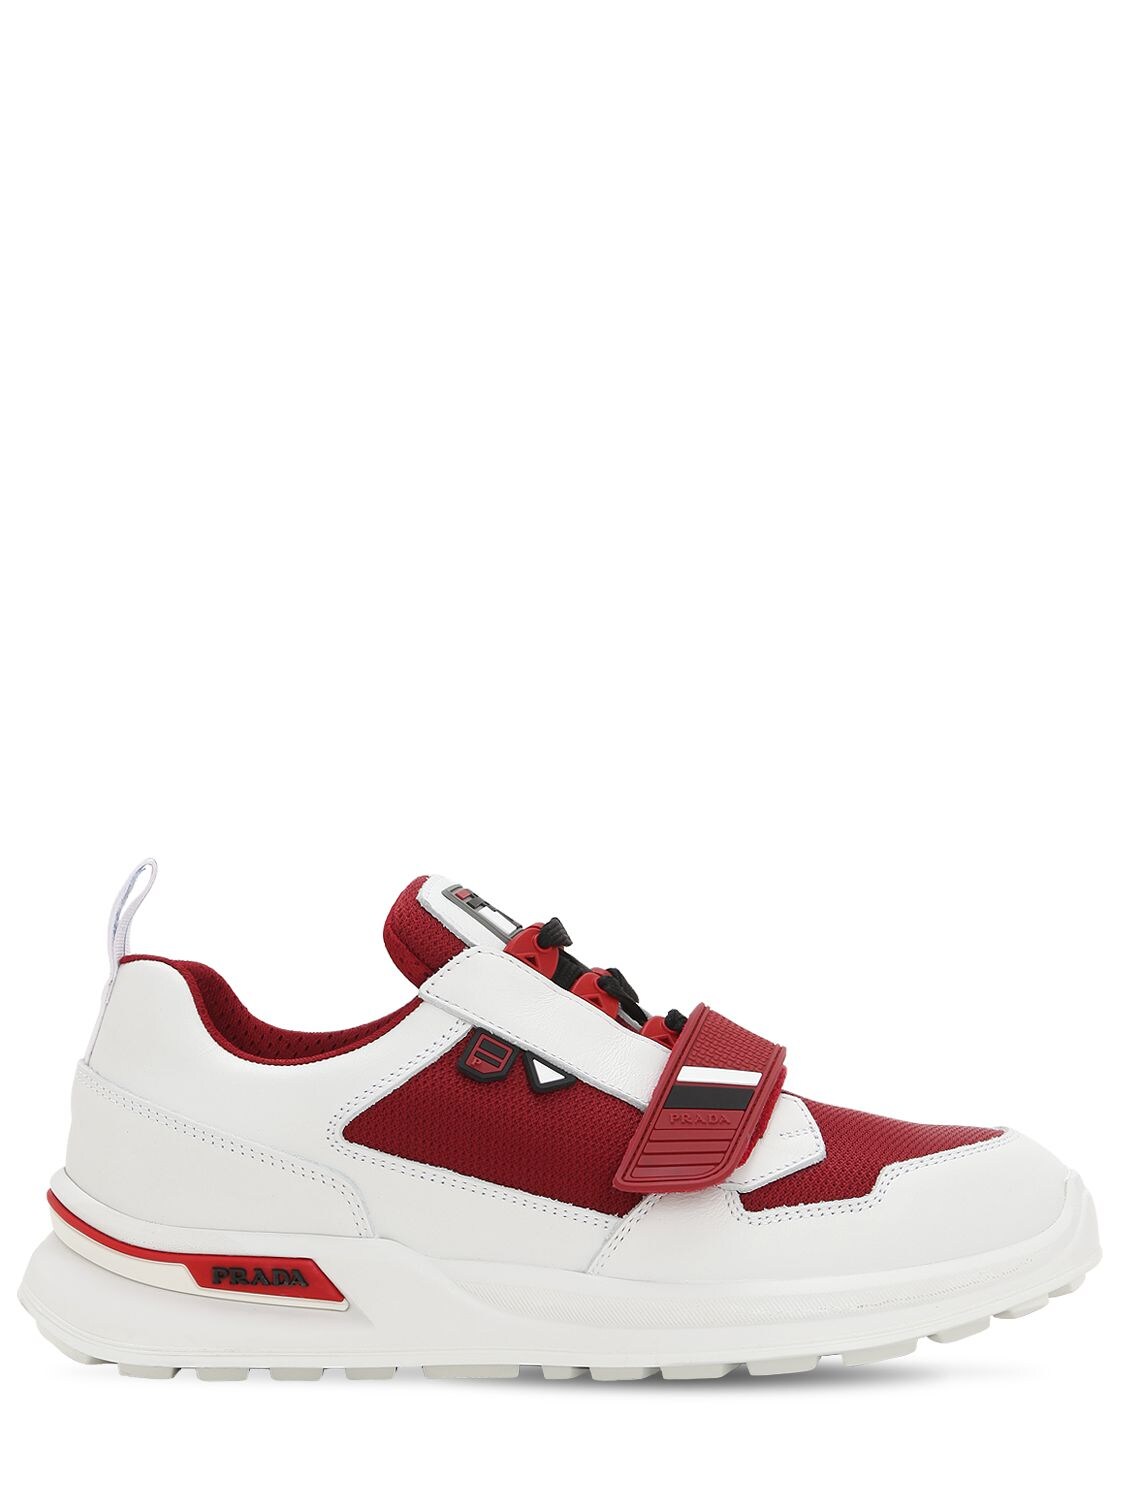 Prada - Work leather & fabric sneakers - White/Red | Luisaviaroma